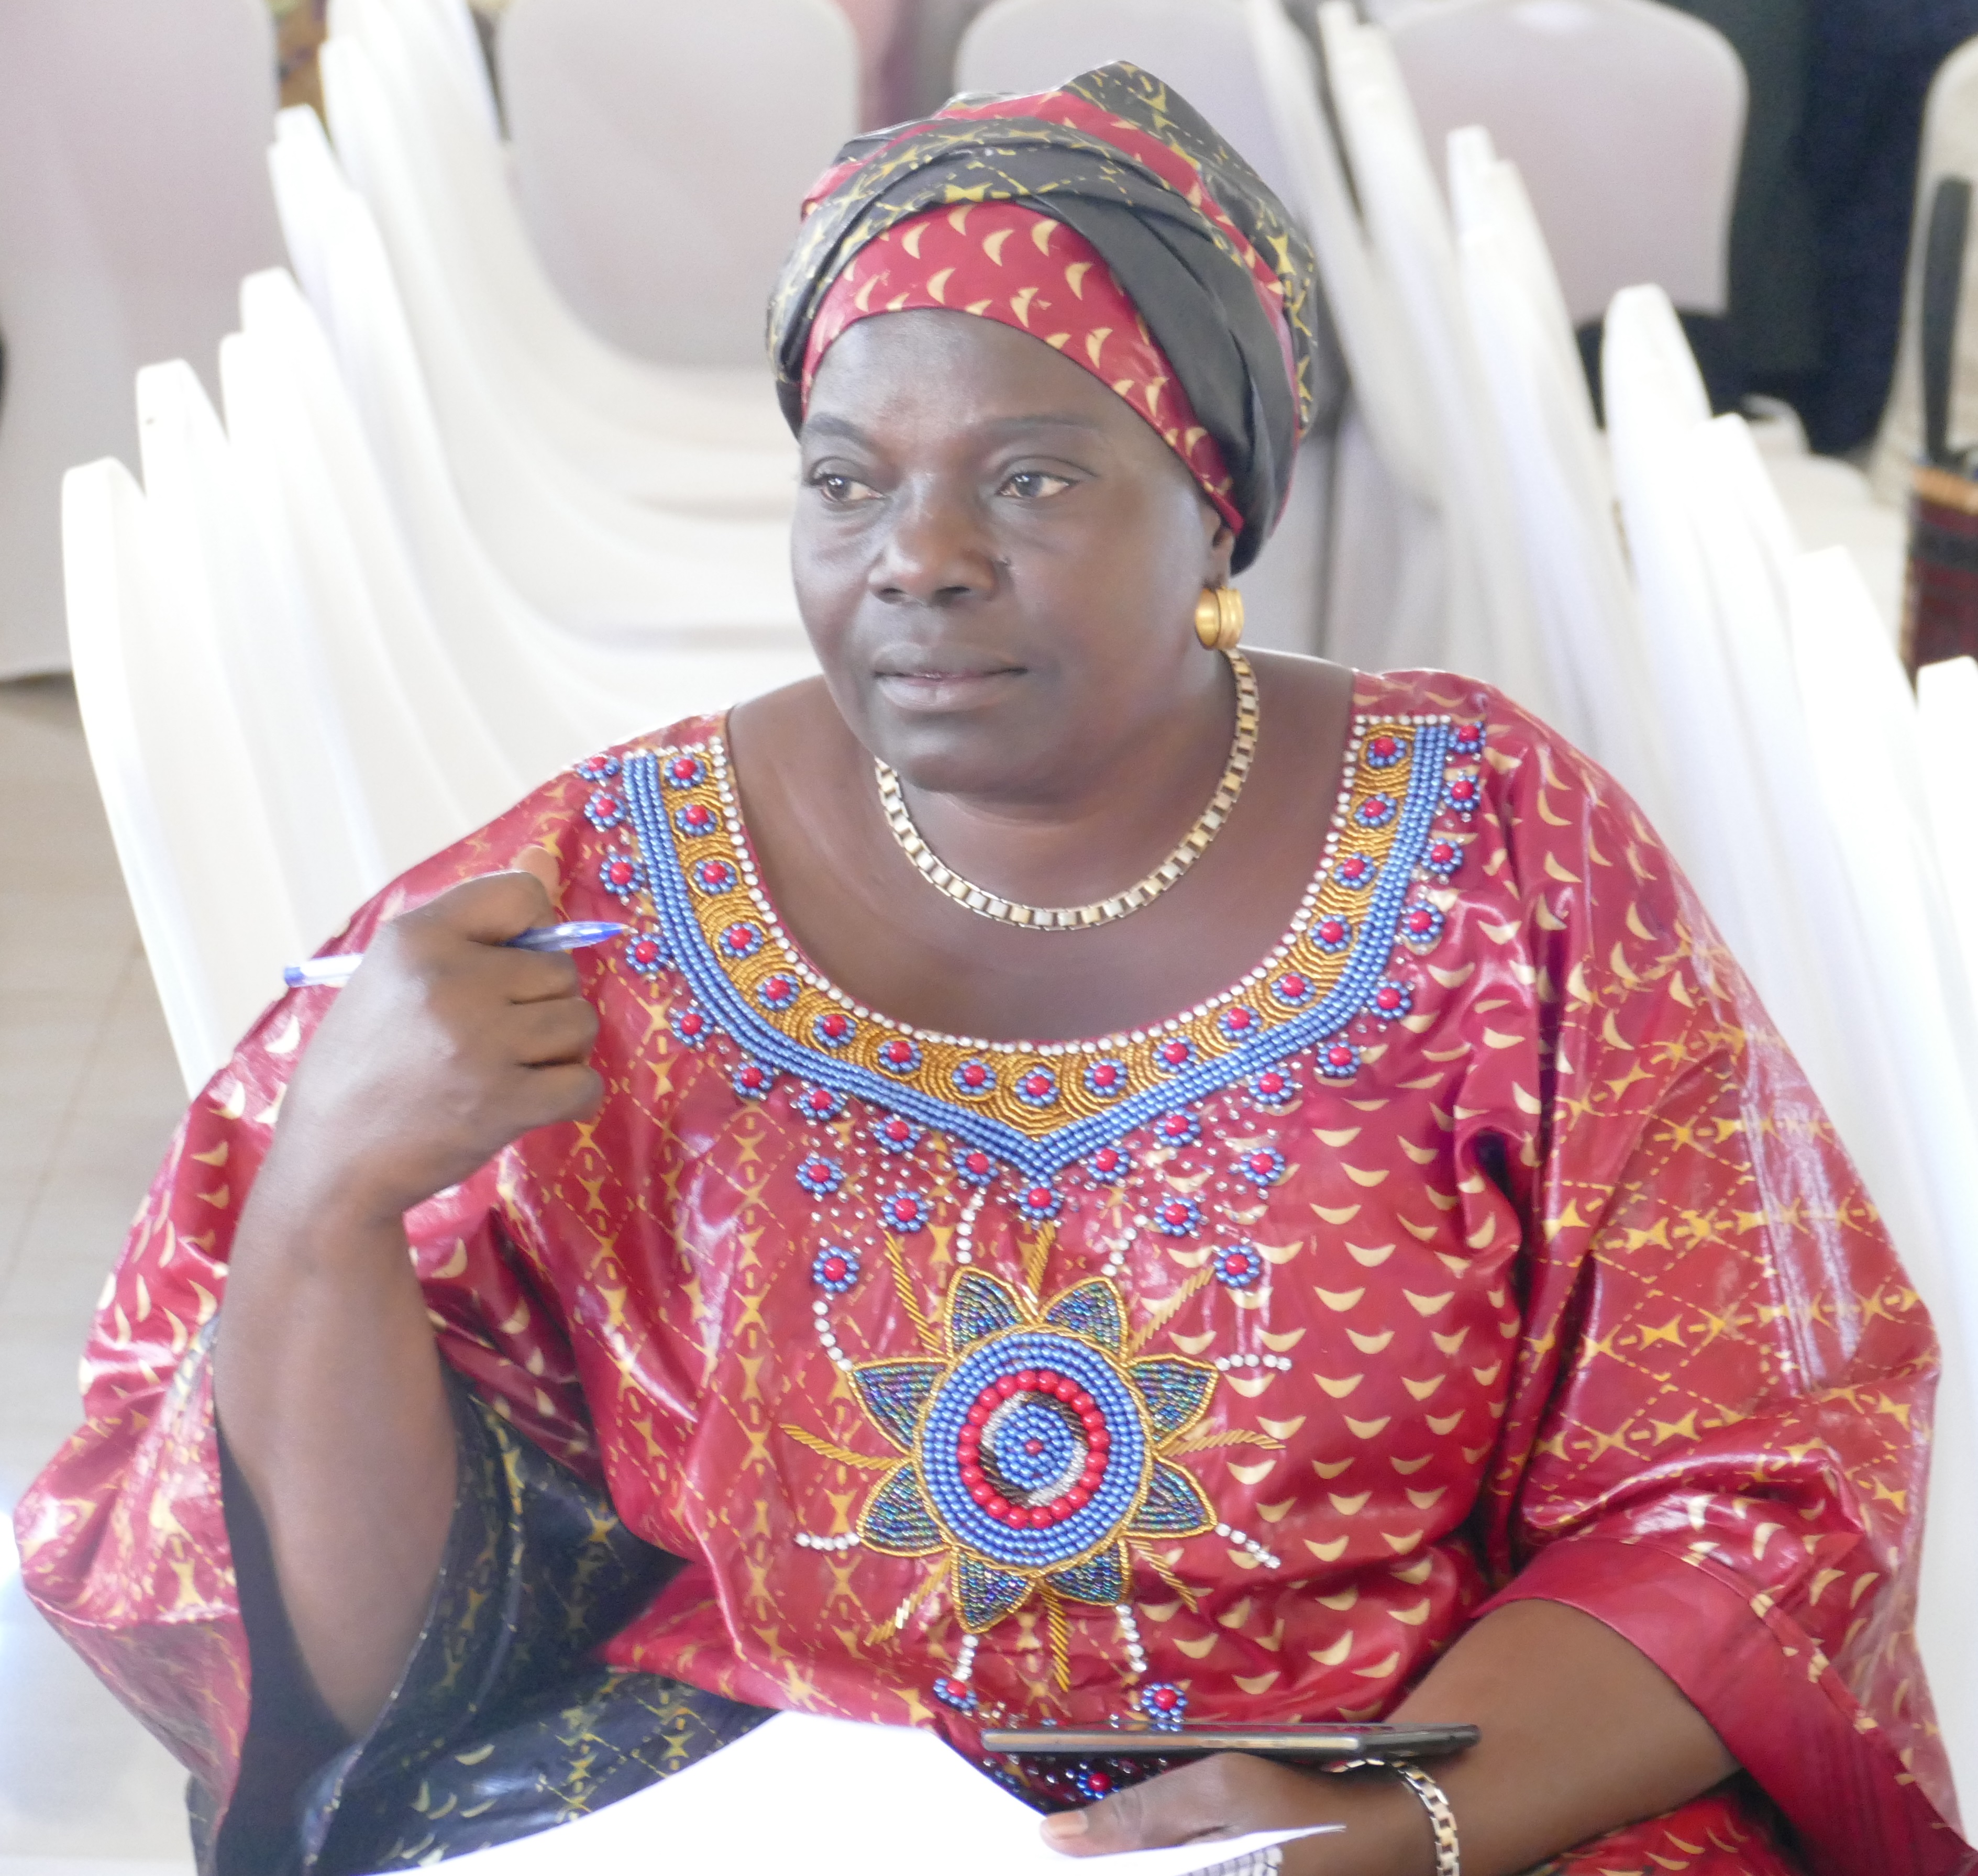 SUD-KIVU : Le Caucus des femmes encourage de voter aussi pour les femmes aux élections du 23 décembre